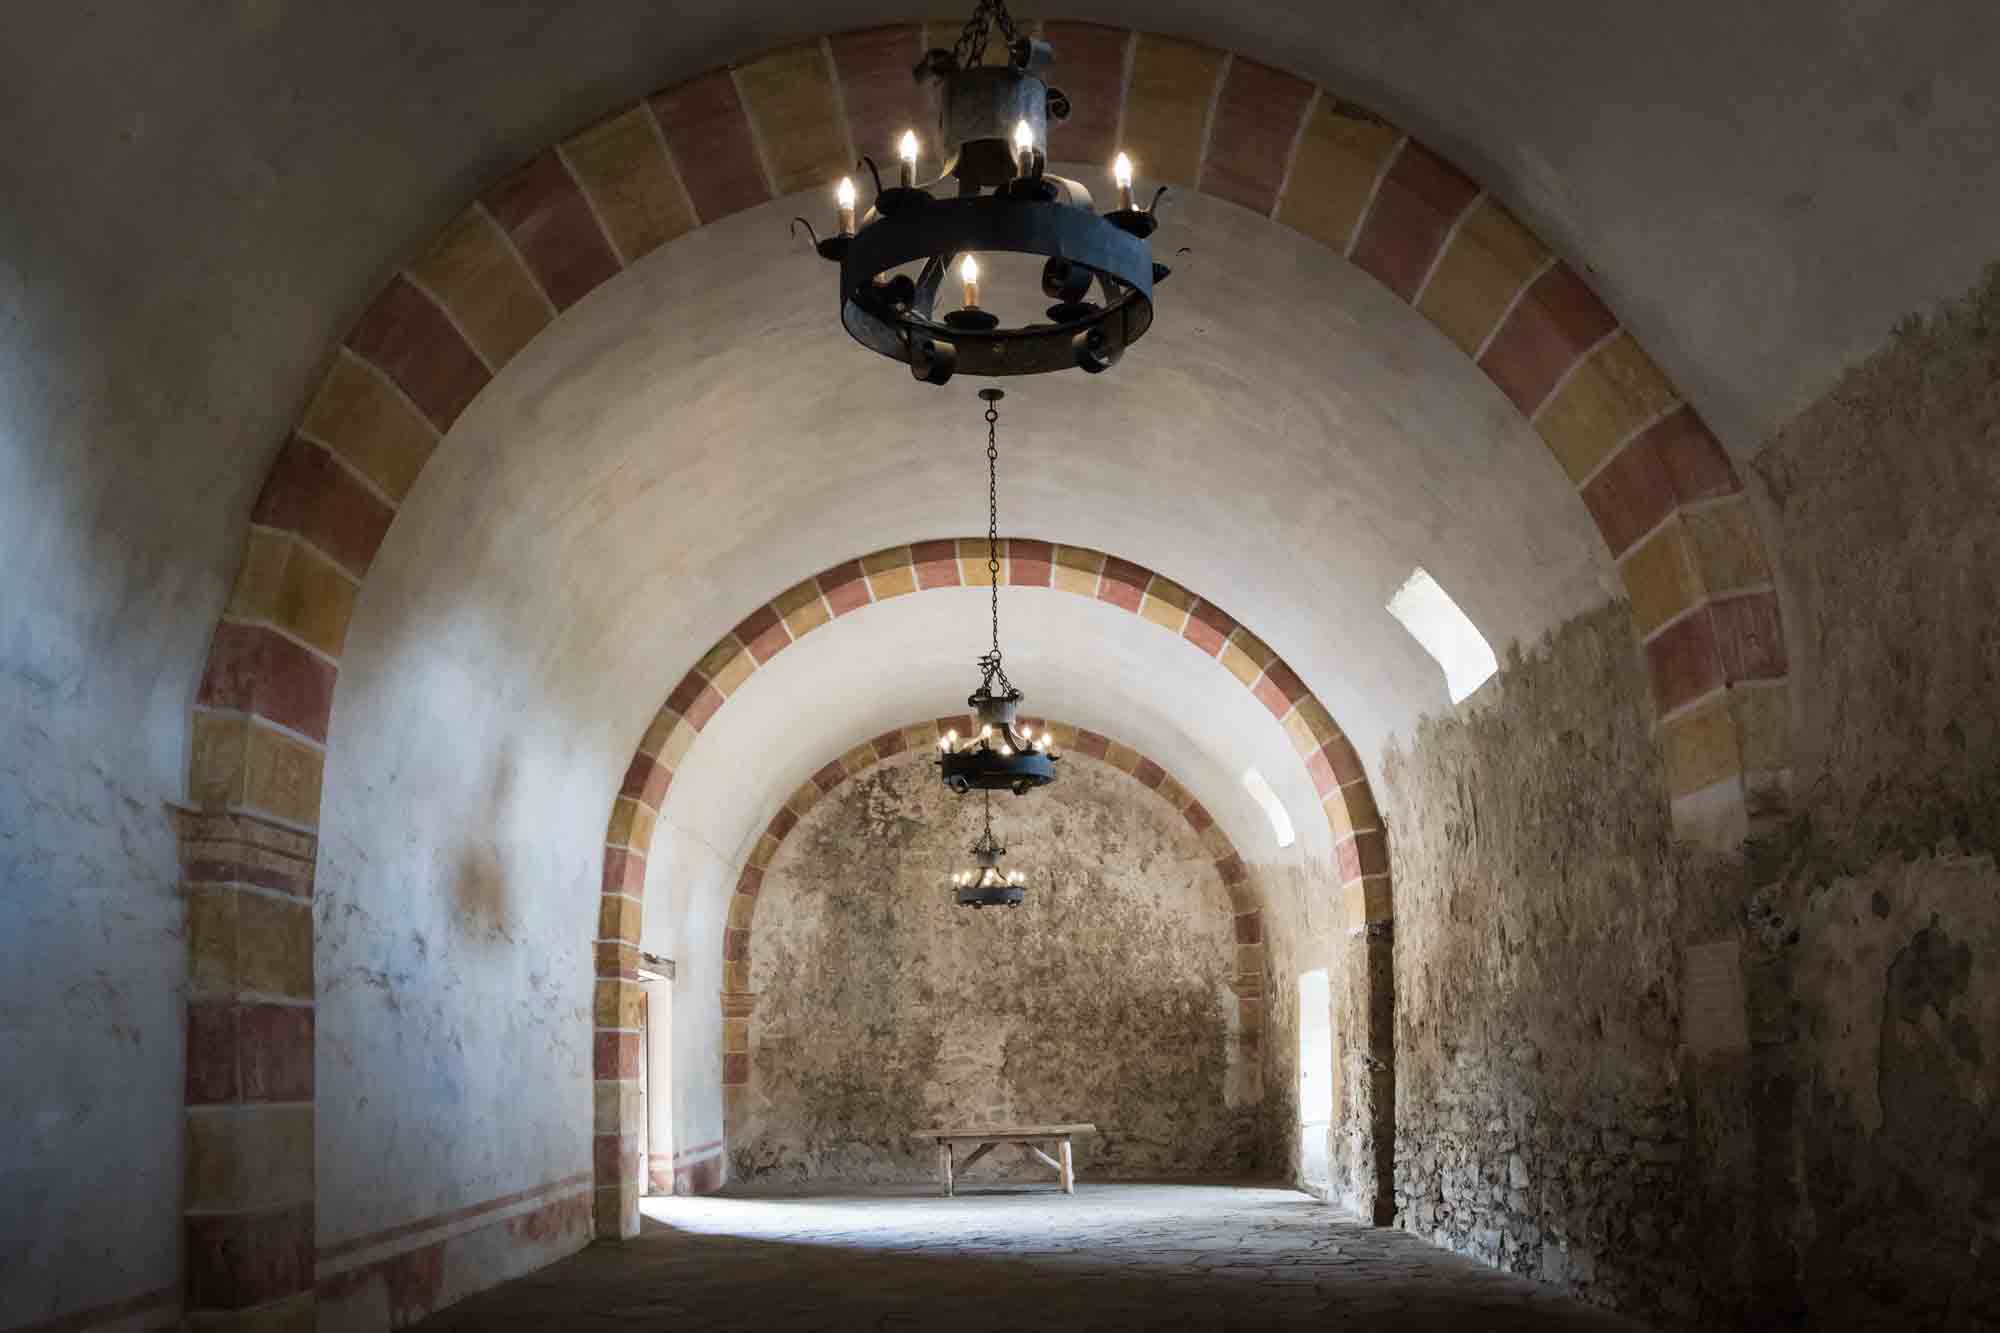 Vault ceiling room in Mission San Juan in San Antonio